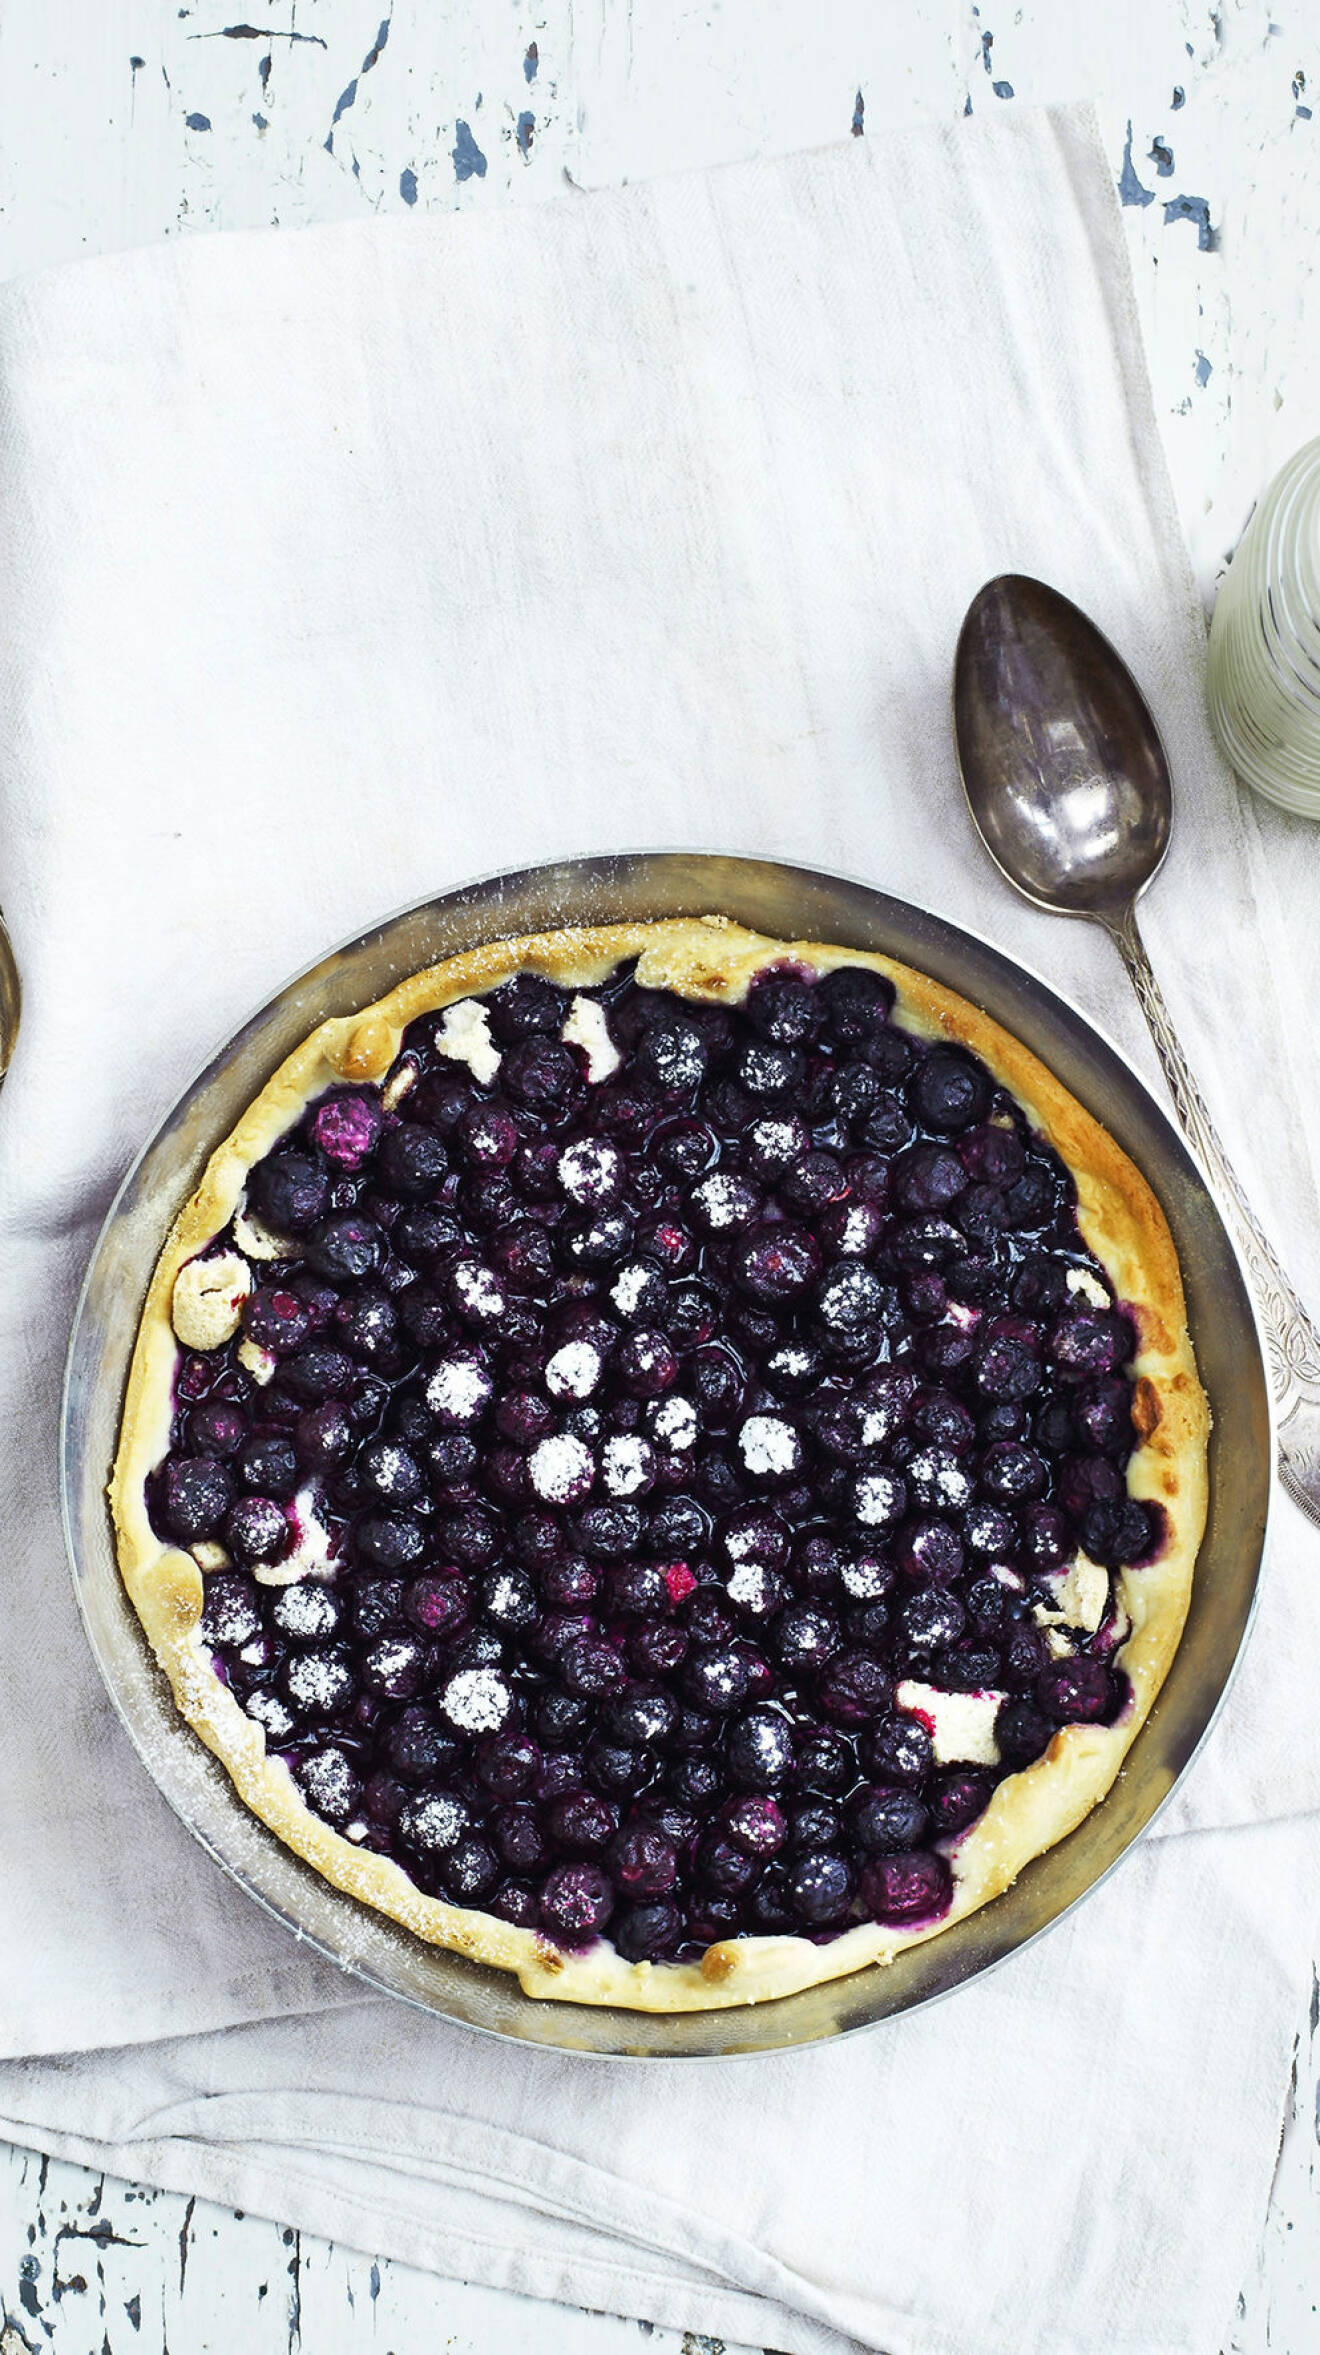 Baka en blåbärspaj med maräng och vaniljkräm